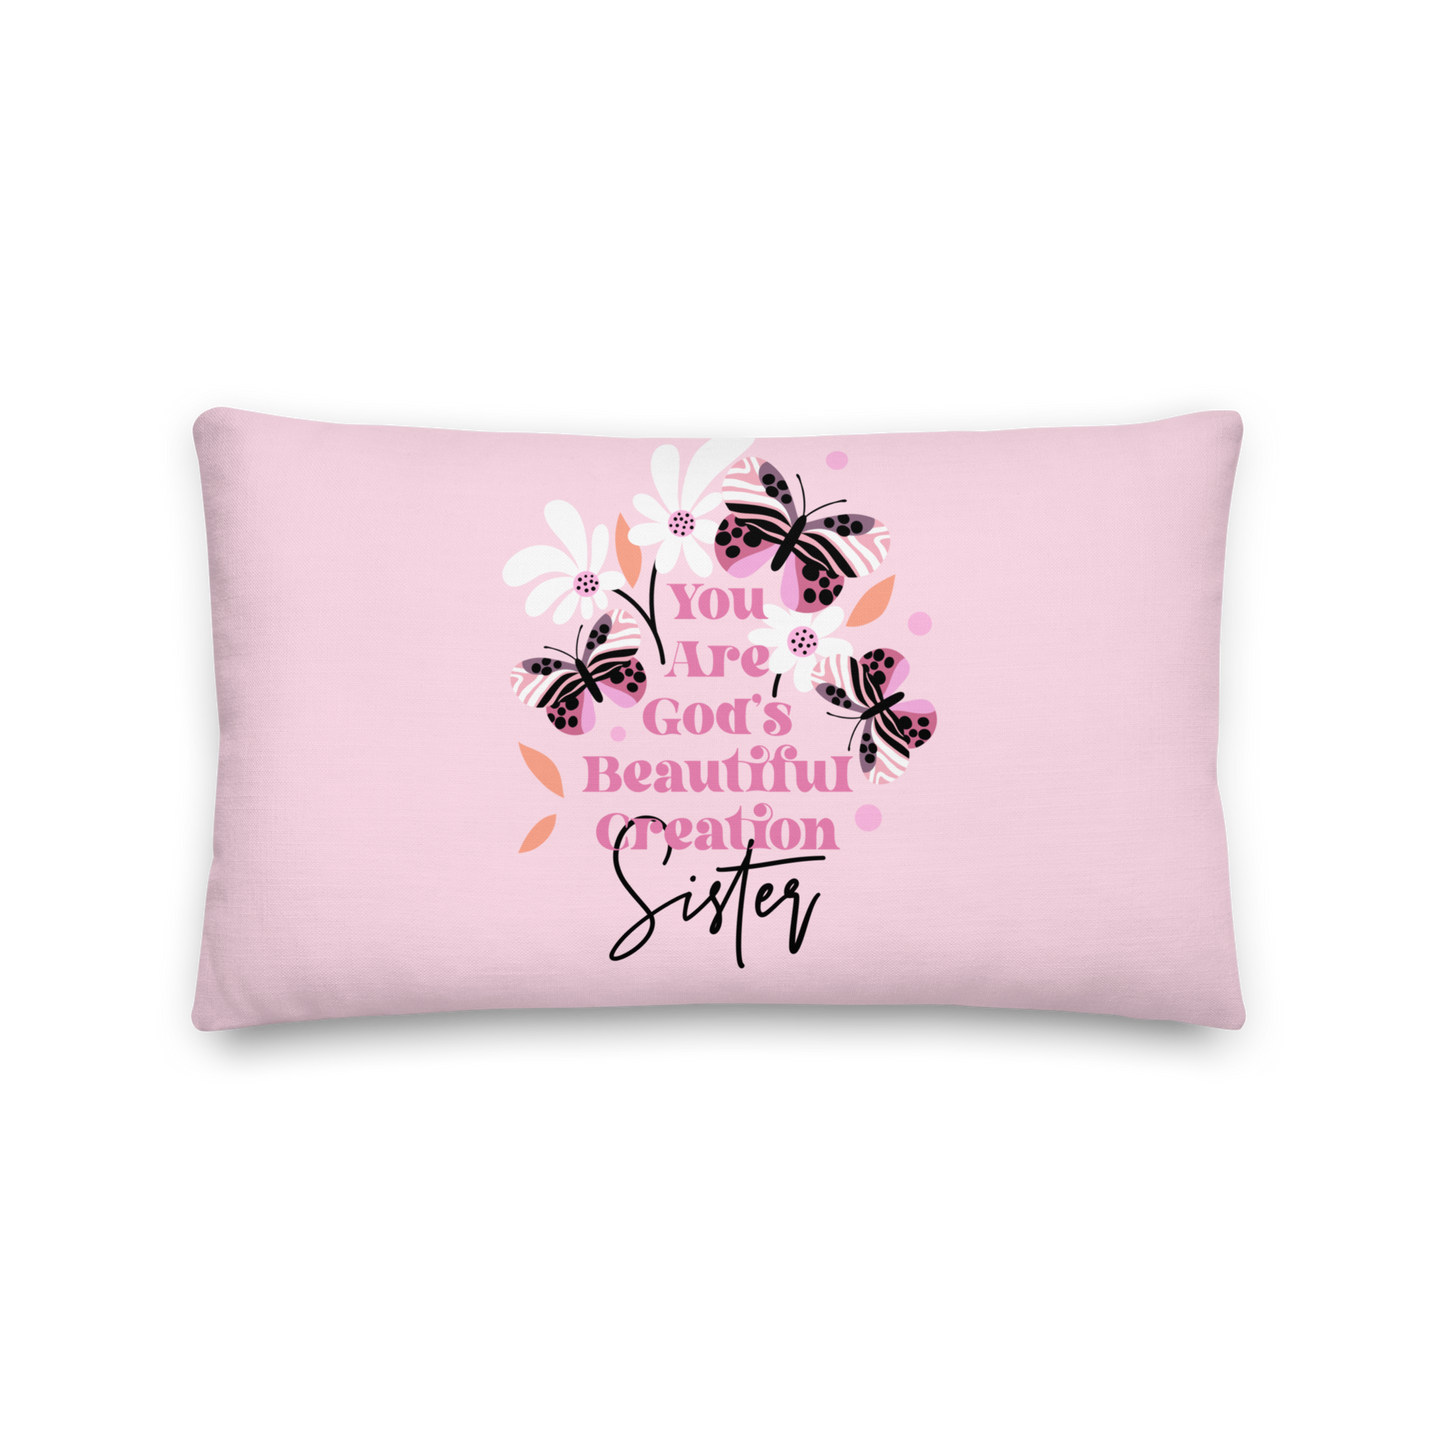 Sister Gift Pillow